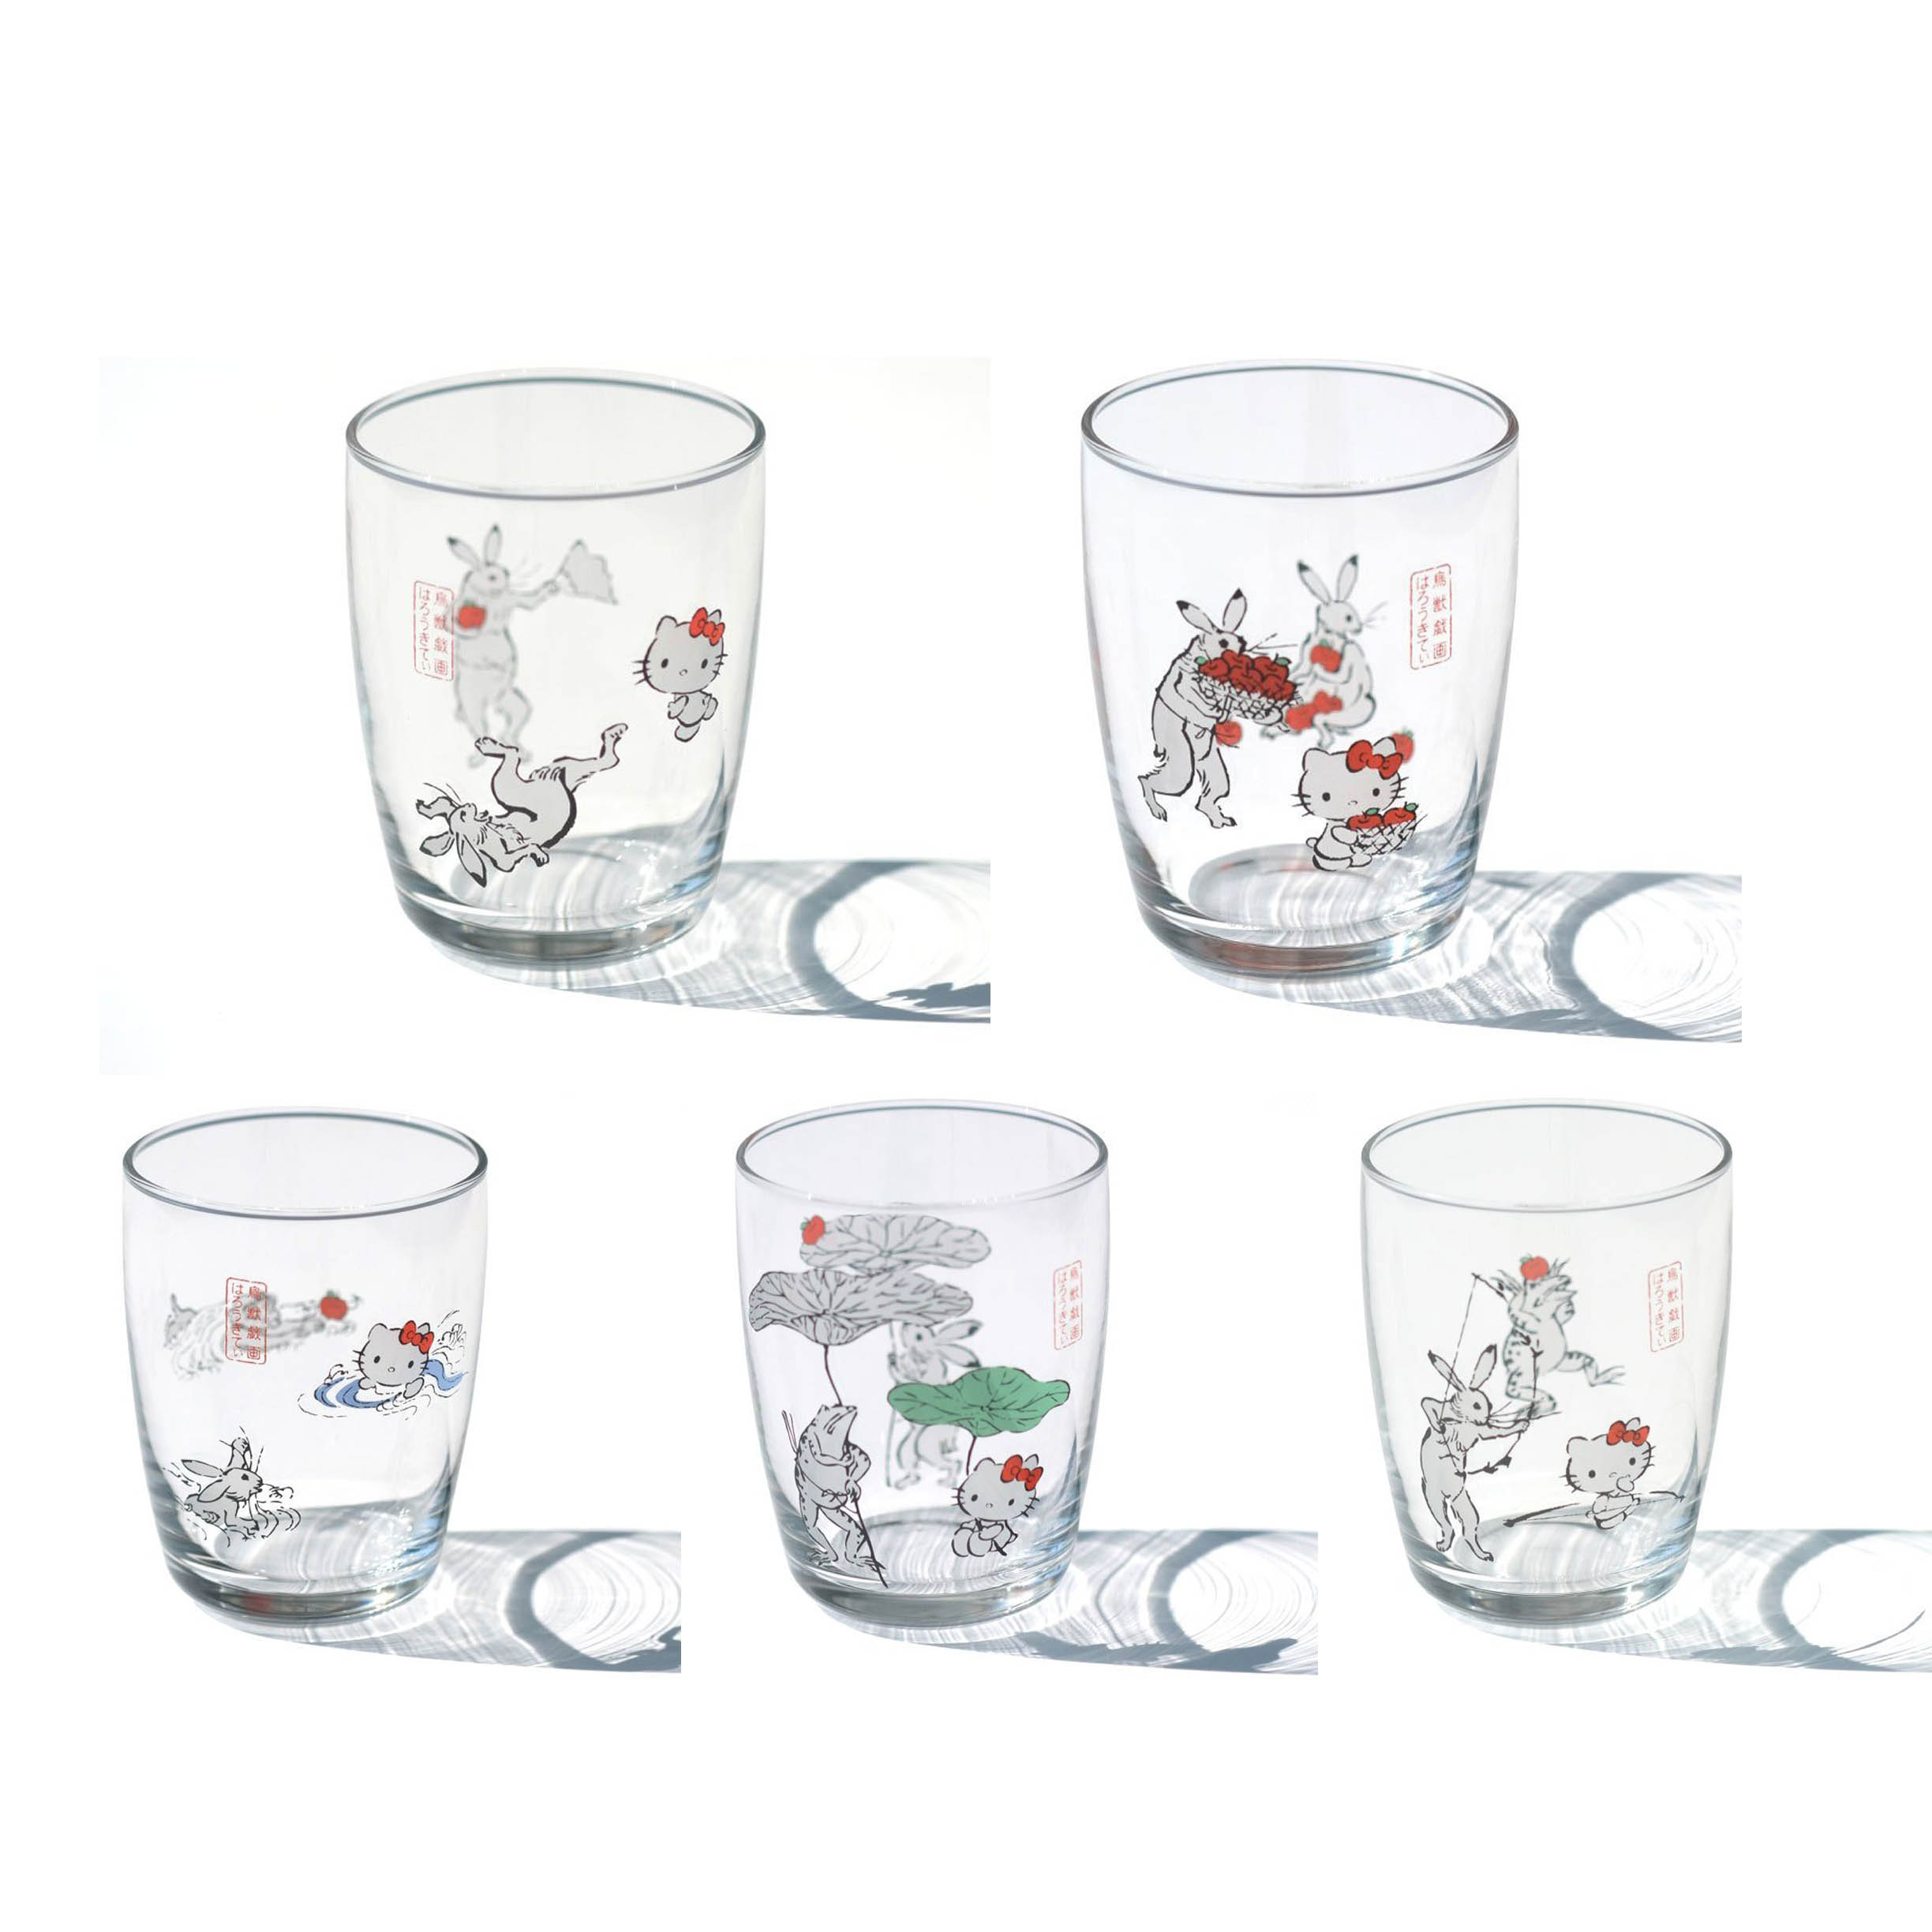 玻璃杯 日本 sanrio KITTY 鳥獣戯画 蓮の傘 相撲 弓遊び りんご 水遊び 杯子 日本進口正版授權